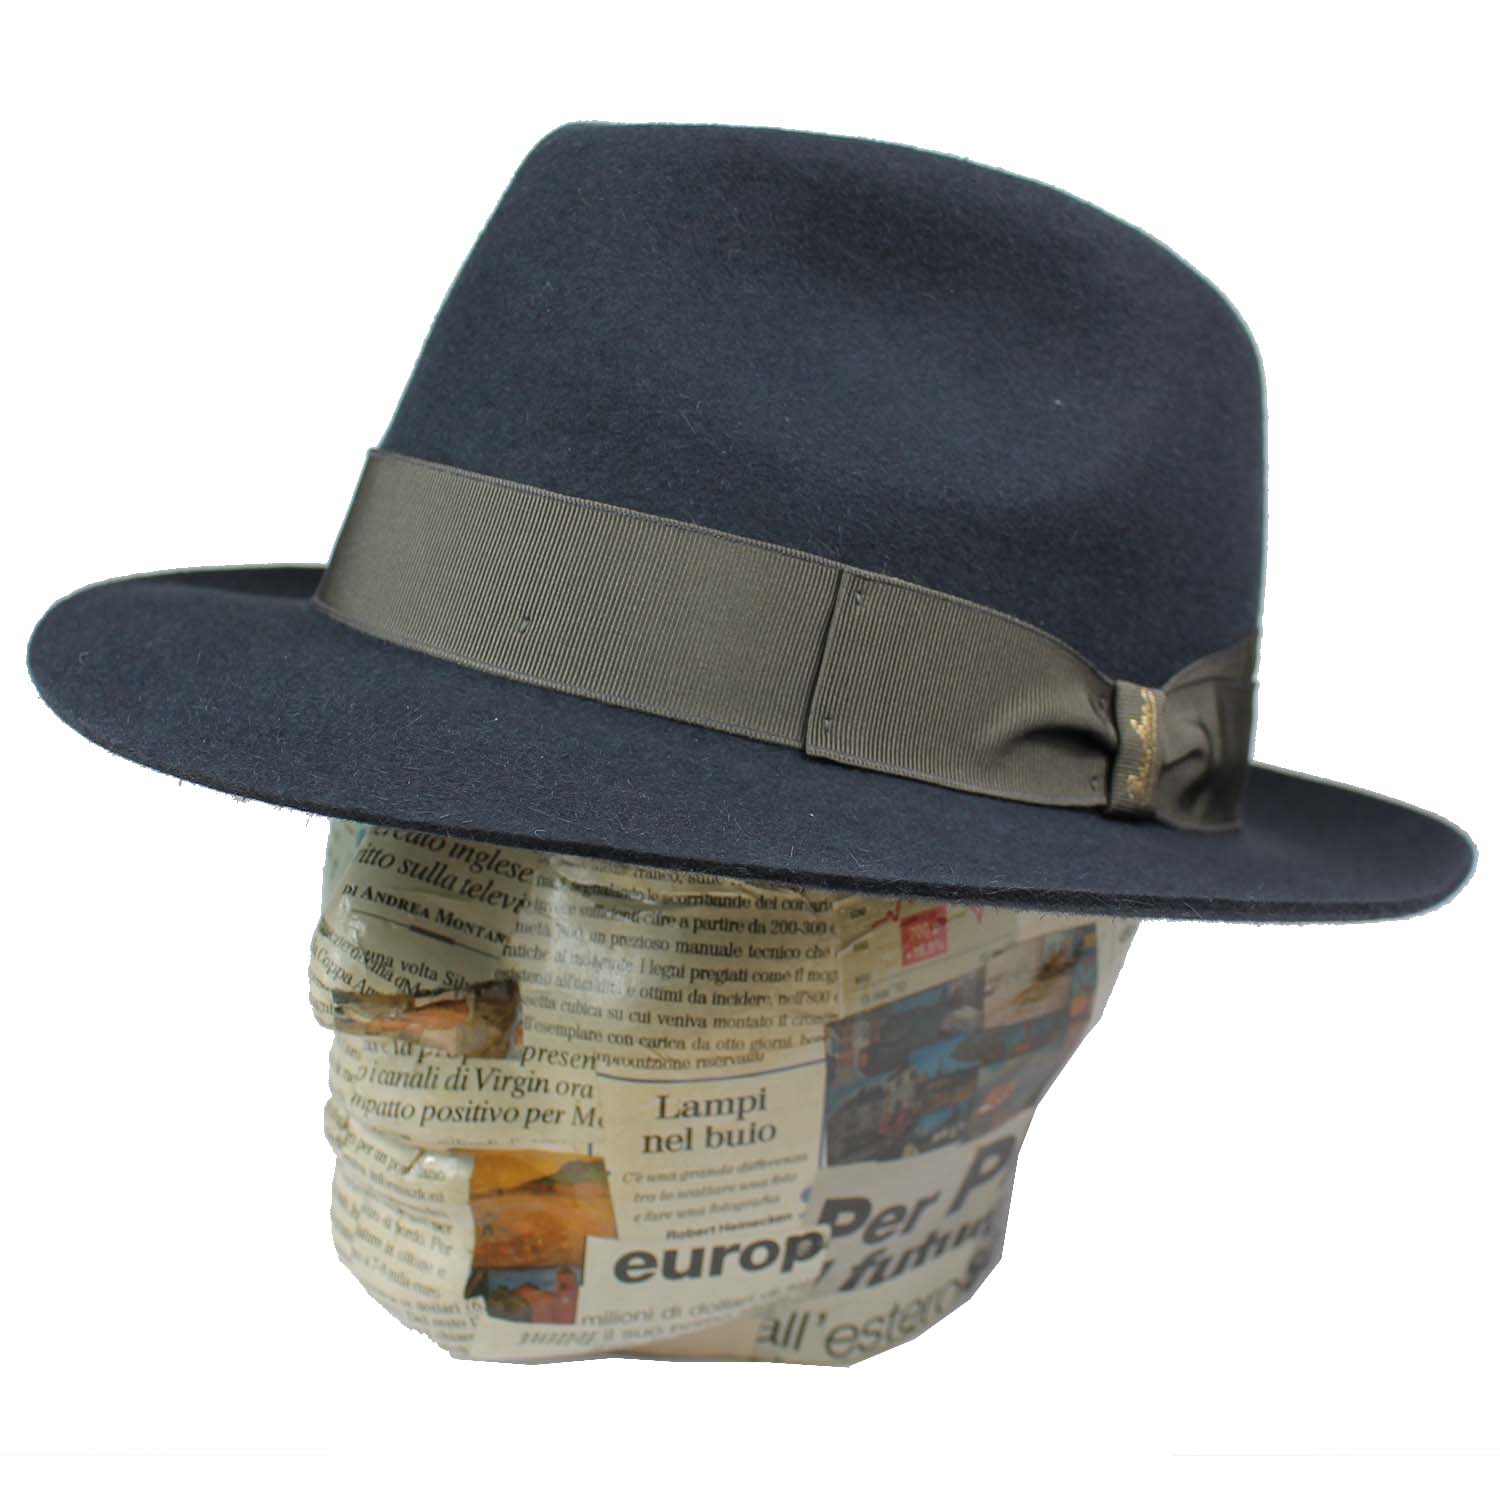 cappello-marchio-borsalino-modello-fedora-in-feltro-di-lepre-colore-blu-grigio